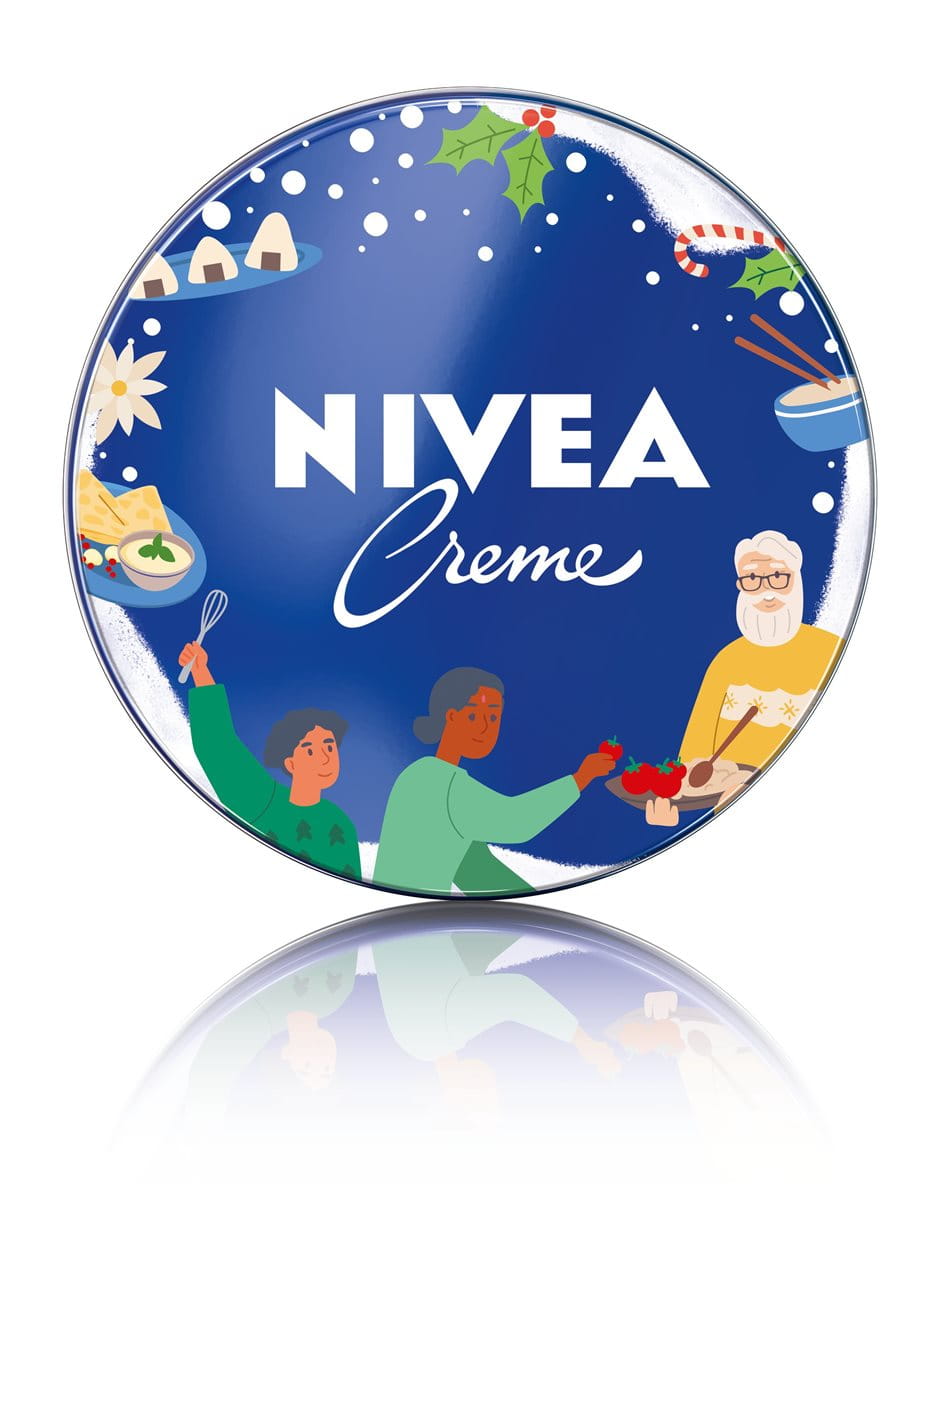 NIVEA Creme Christmas Limited Edition